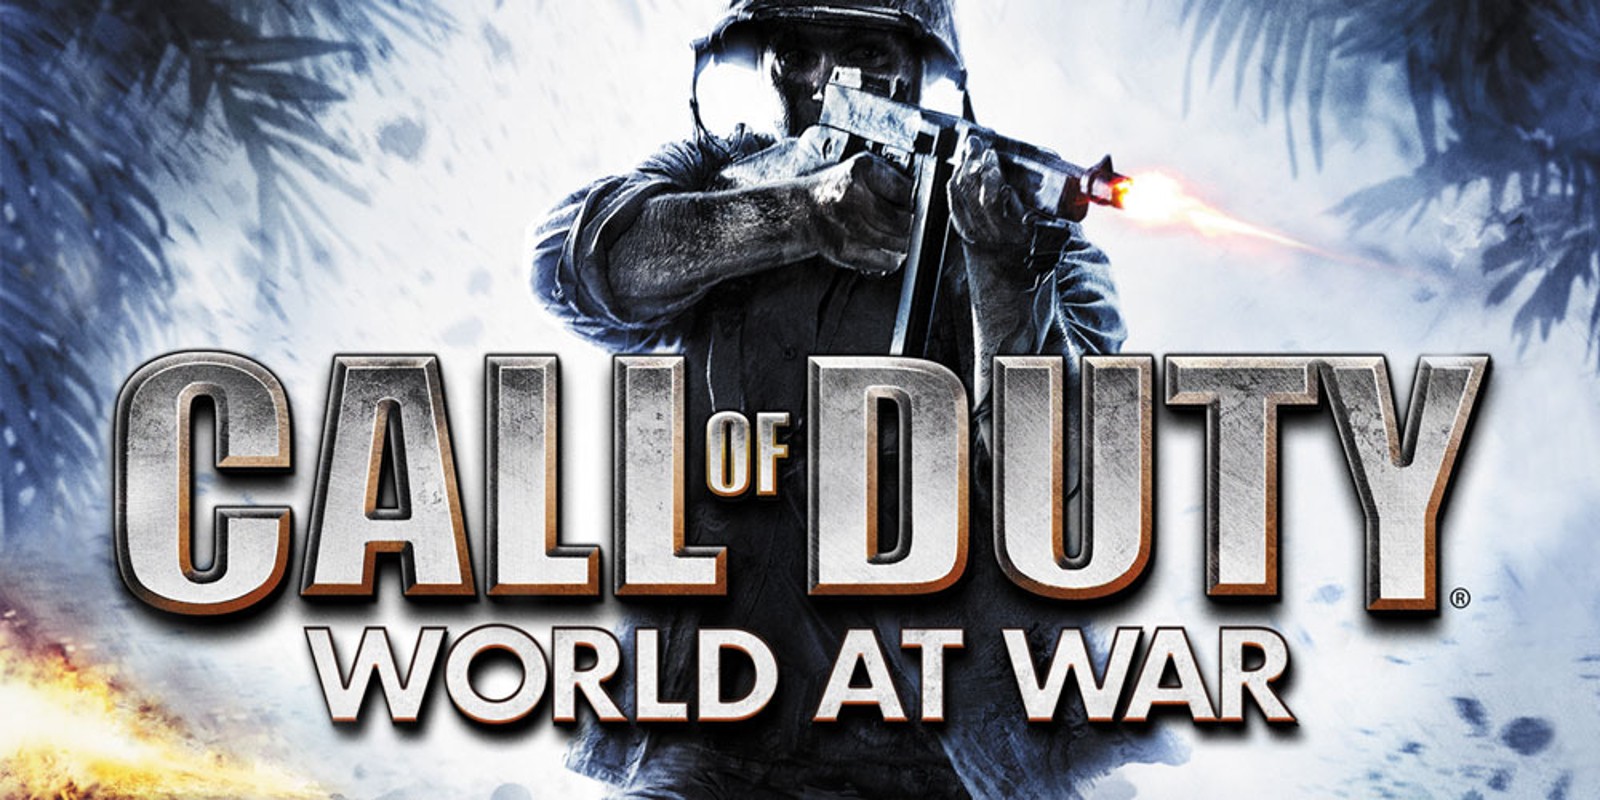 تحميل لعبه Call Of Duty World At War للكمبيوتر الضعيف اصدار 2019 برابط واحد مباشر 